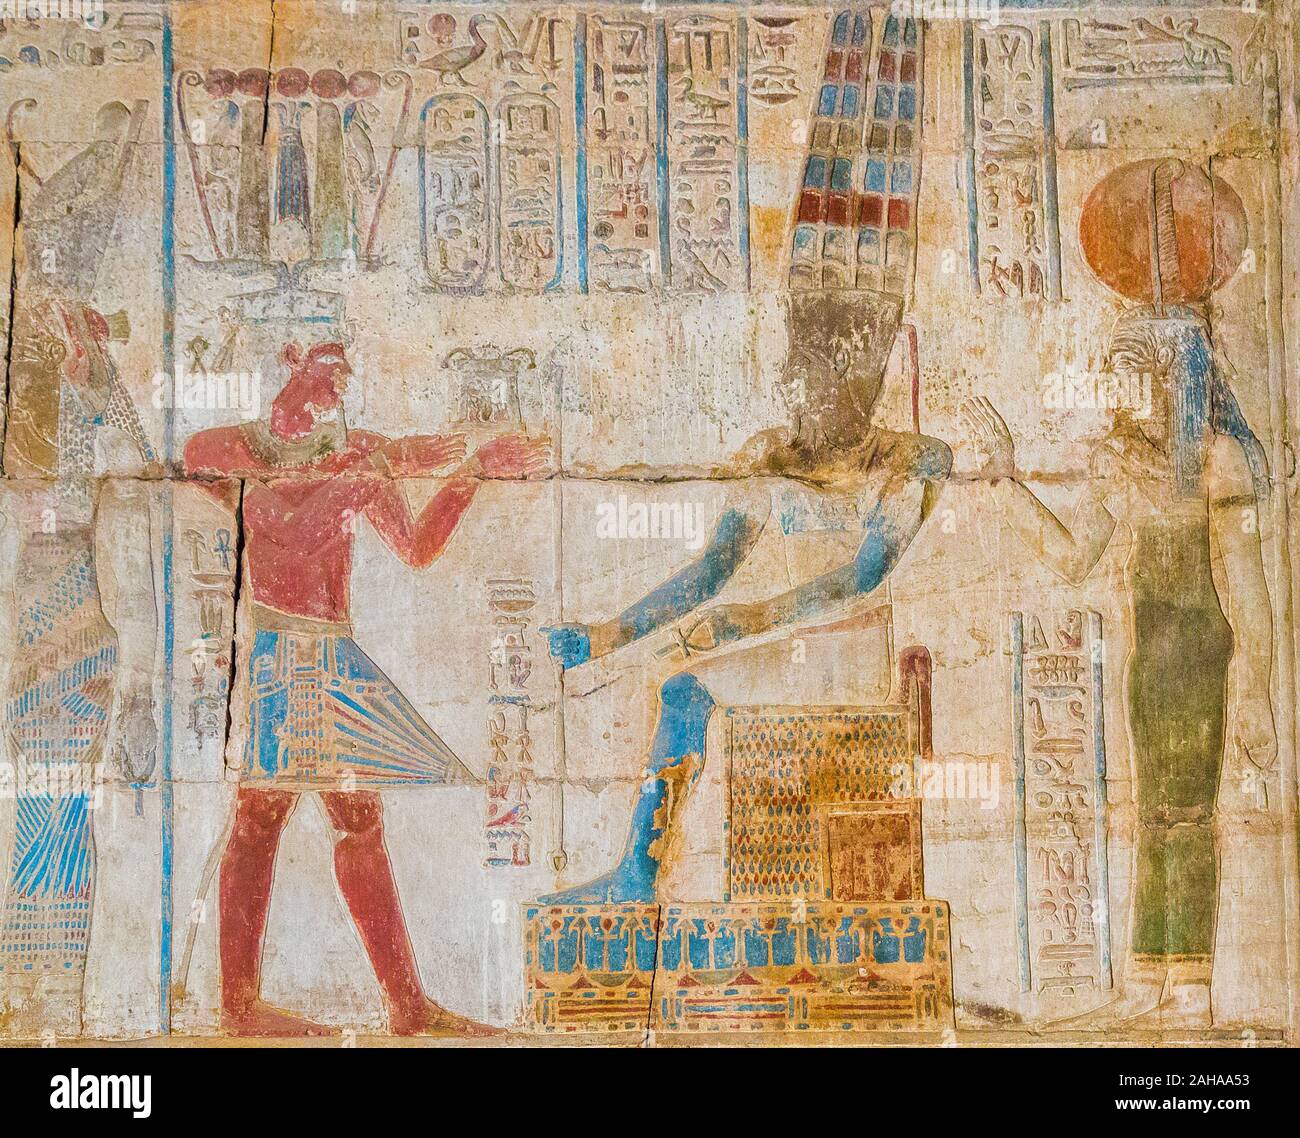 Thèbes en Egypte, Karnak temple ptolémaïque, site de l'OFFT. Le roi, vêtu d'une couronne hemhem et un pagne empesé, offre une nageoire pectorale à dieu Amon. Banque D'Images